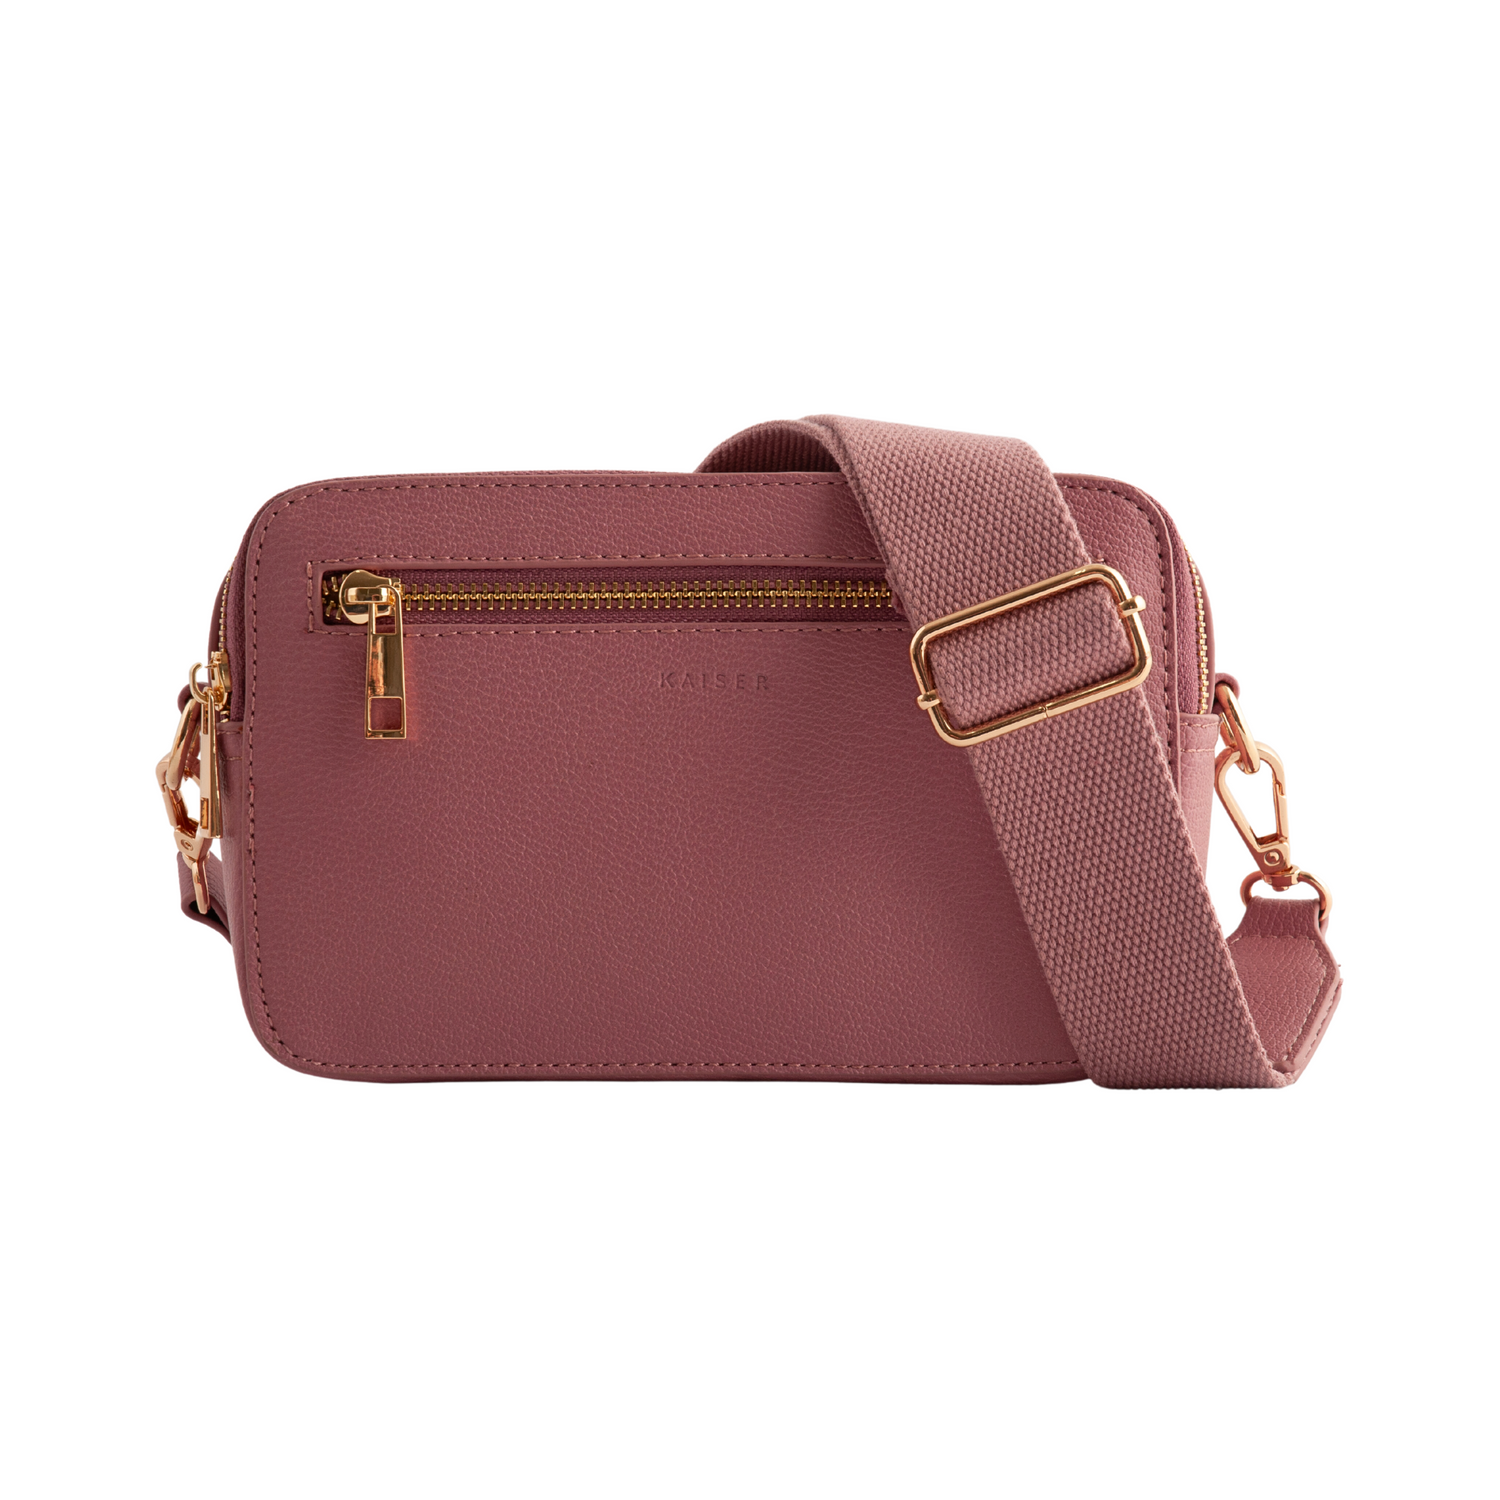 Fashion - Bags - Handbags